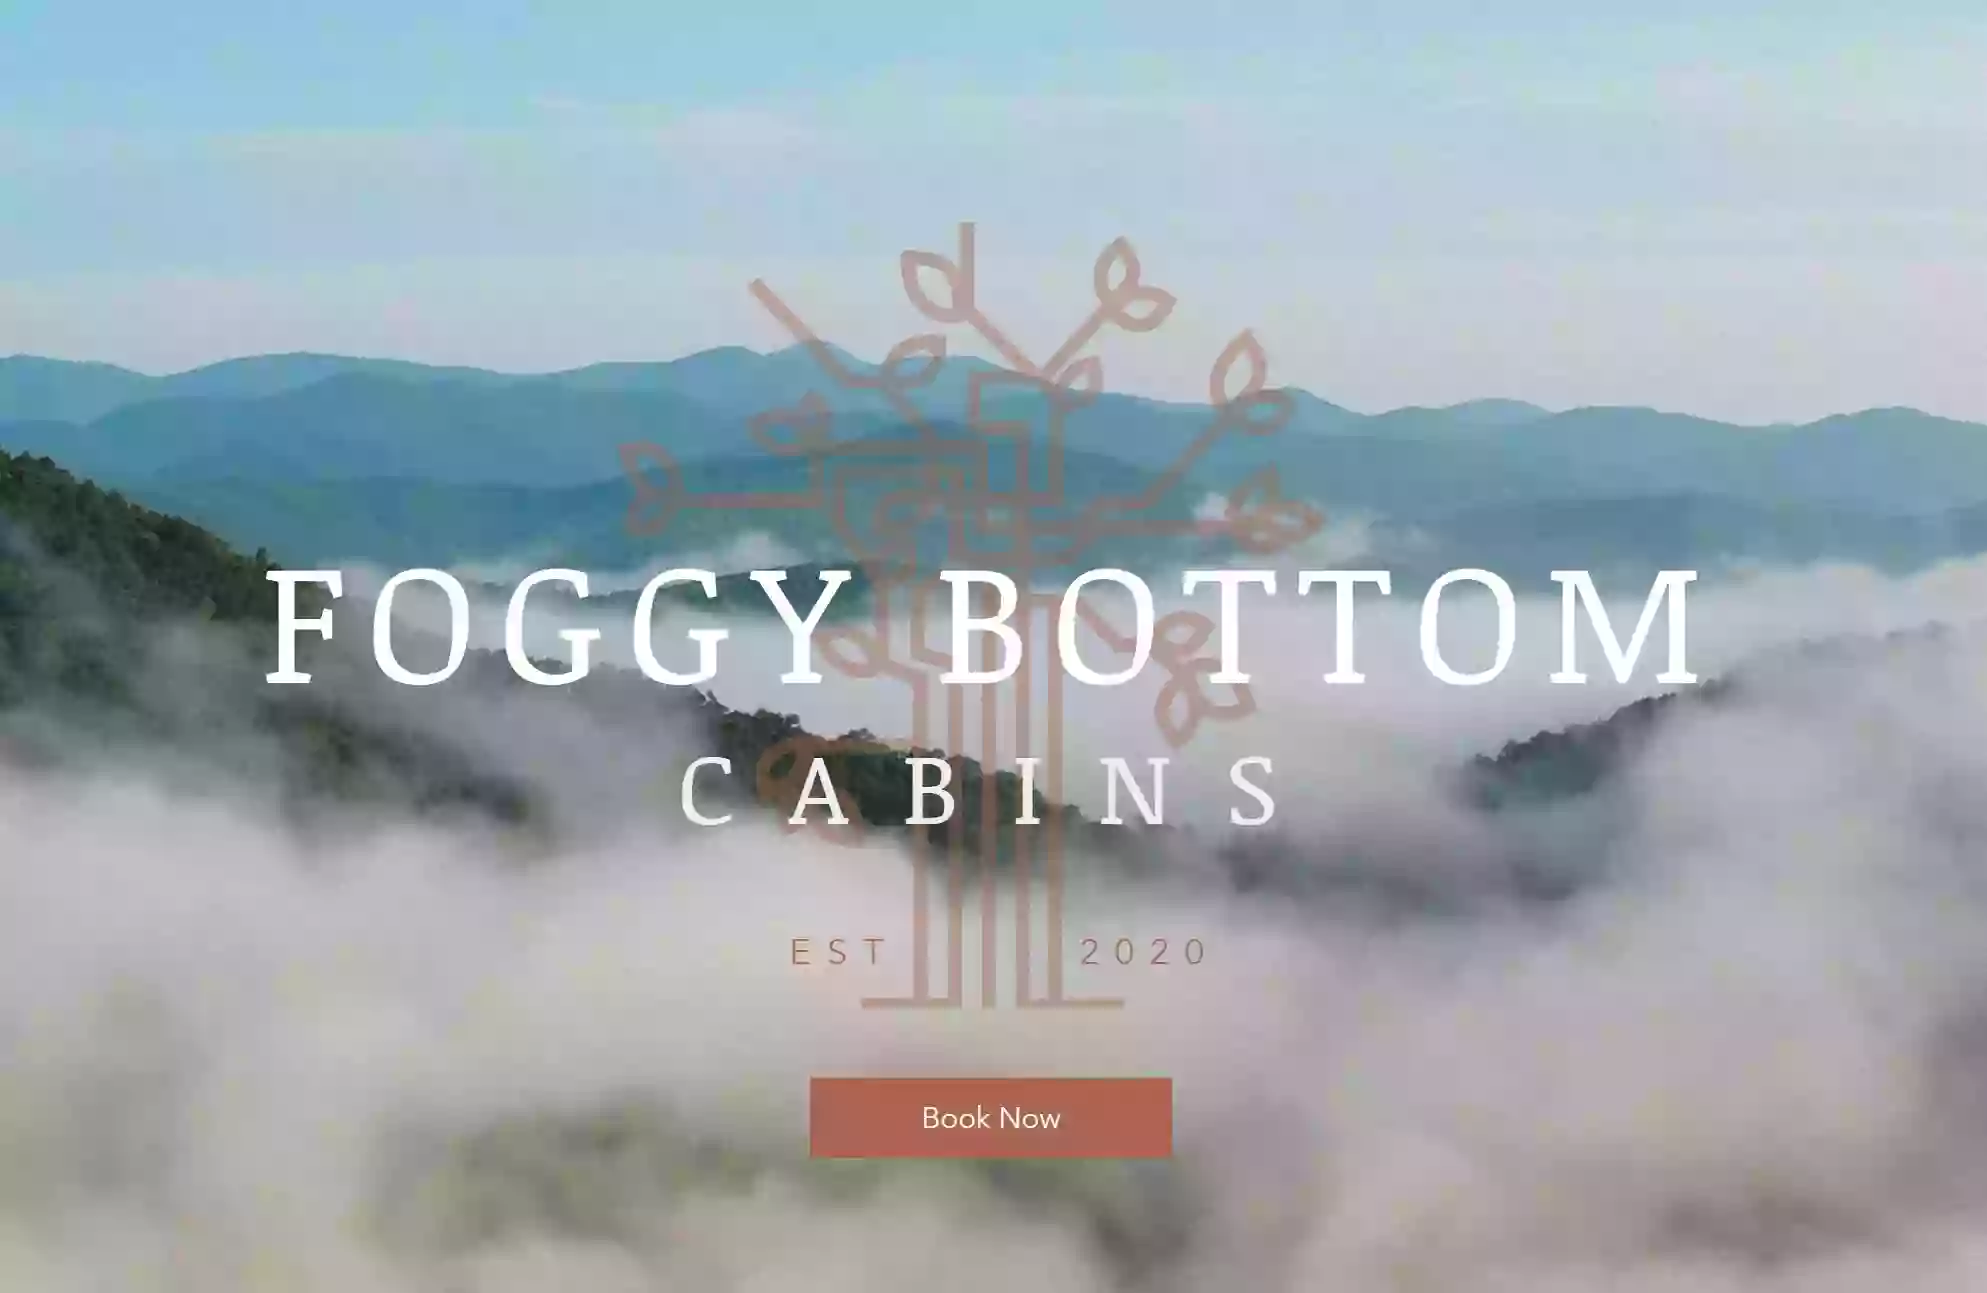 Foggy Bottom Cabins